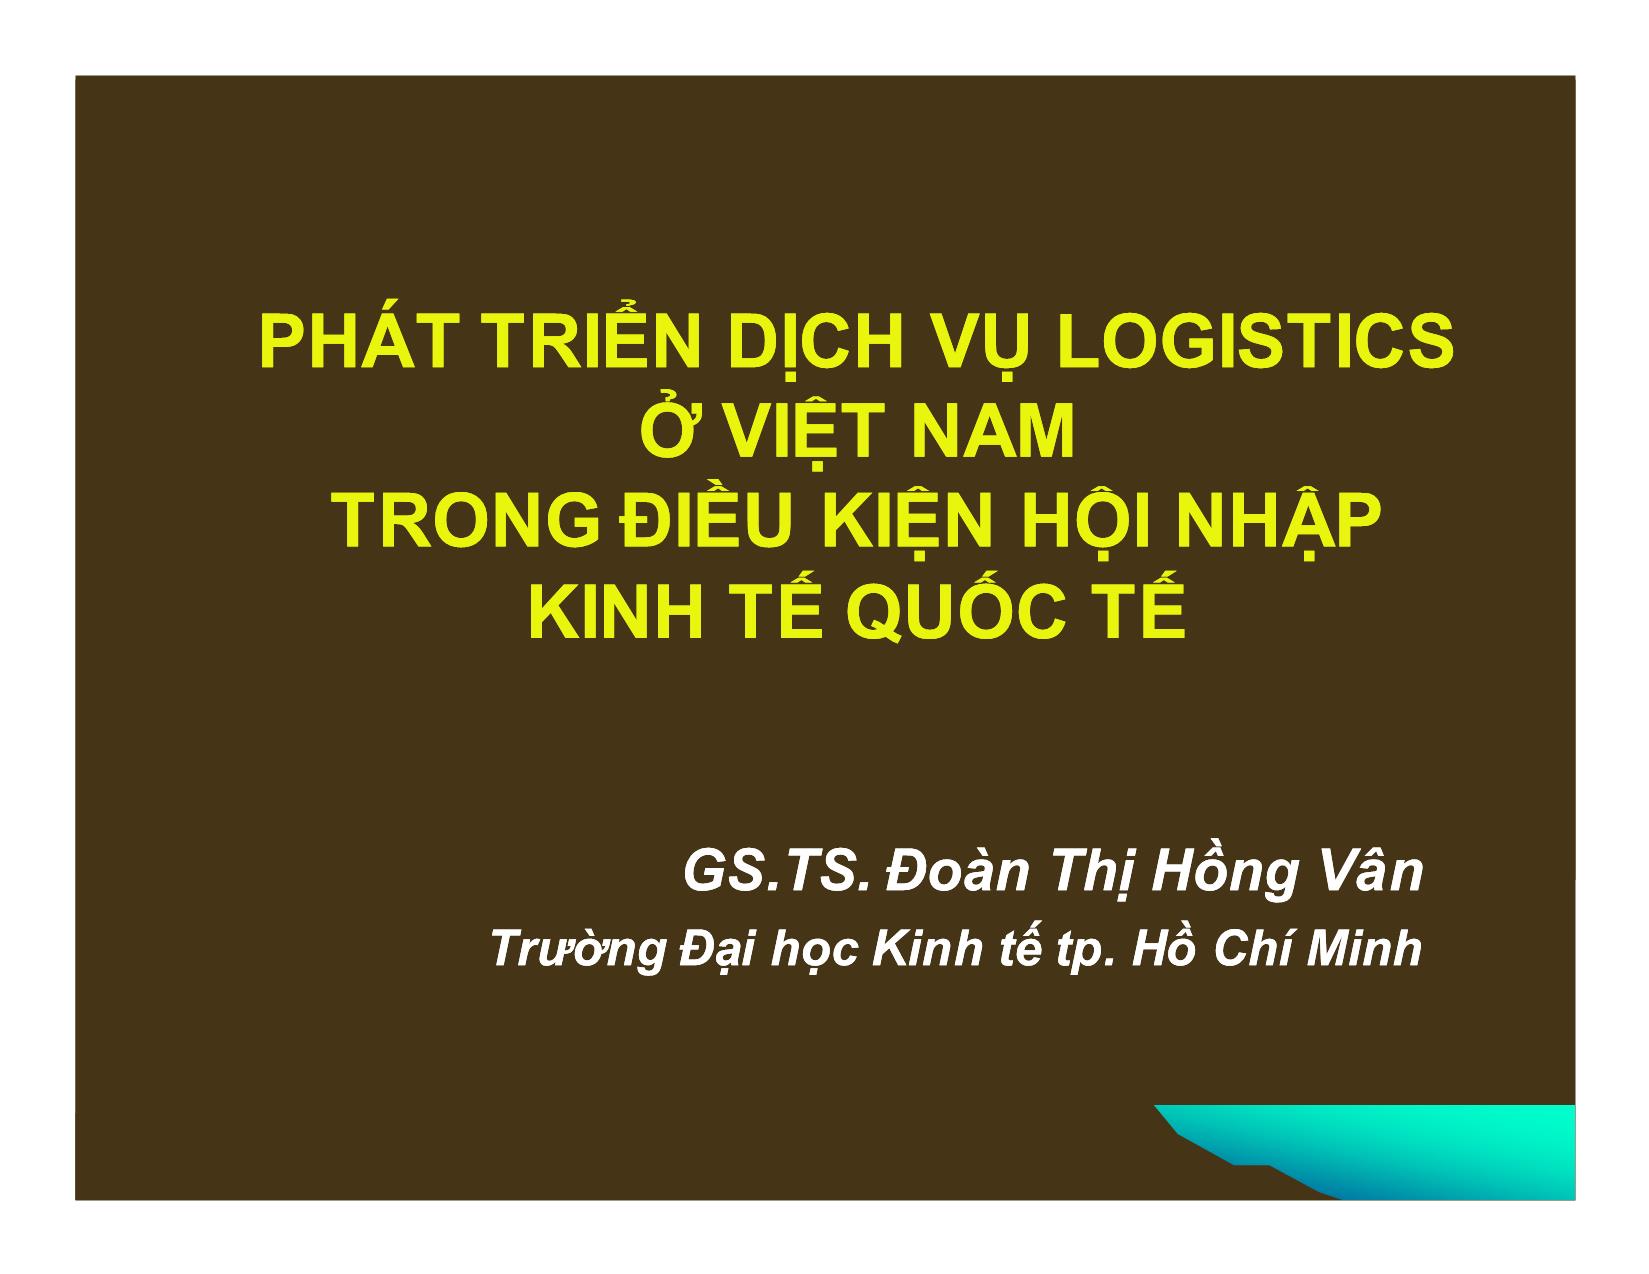 Phát triển dịch vụ logistics ở Việt Nam trong điều kiện hội nhập kinh tế quốc tế trang 1